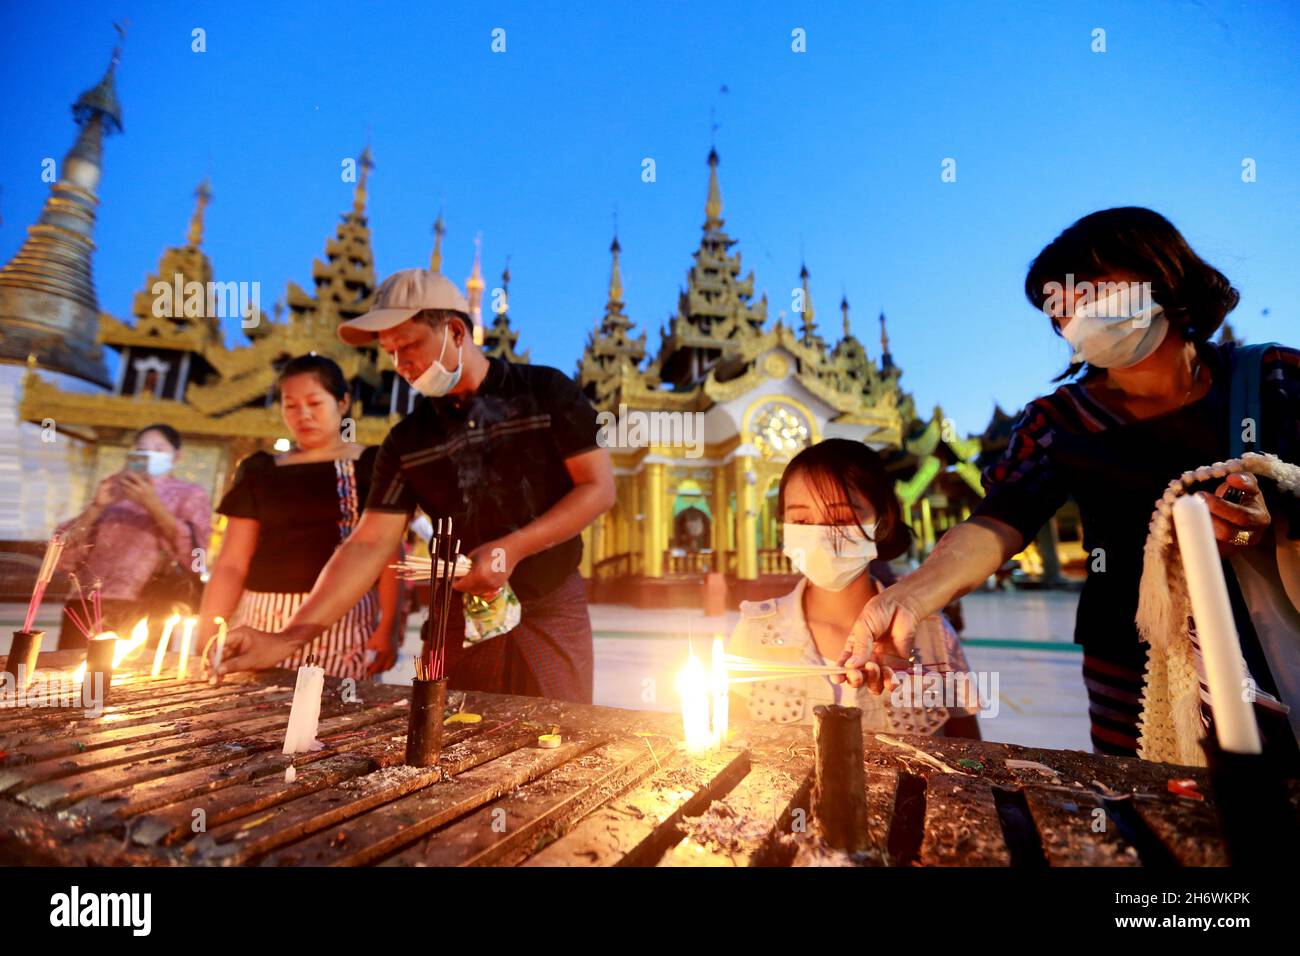 Yangon, Myanmar. November 2021. Während des traditionellen Tazaungdaing Festivals in der Shwedagon Pagode in Yangon, Myanmar, am 18. November 2021, zünden Menschen Kerzen an. Das Tazaungdaing Festival, auch bekannt als das Festival of Lights, fällt in den achten Monat des traditionellen myanmarischen Kalenders. Es wird als Nationalfeiertag in Myanmar gefeiert. Quelle: U Aung/Xinhua/Alamy Live News Stockfoto